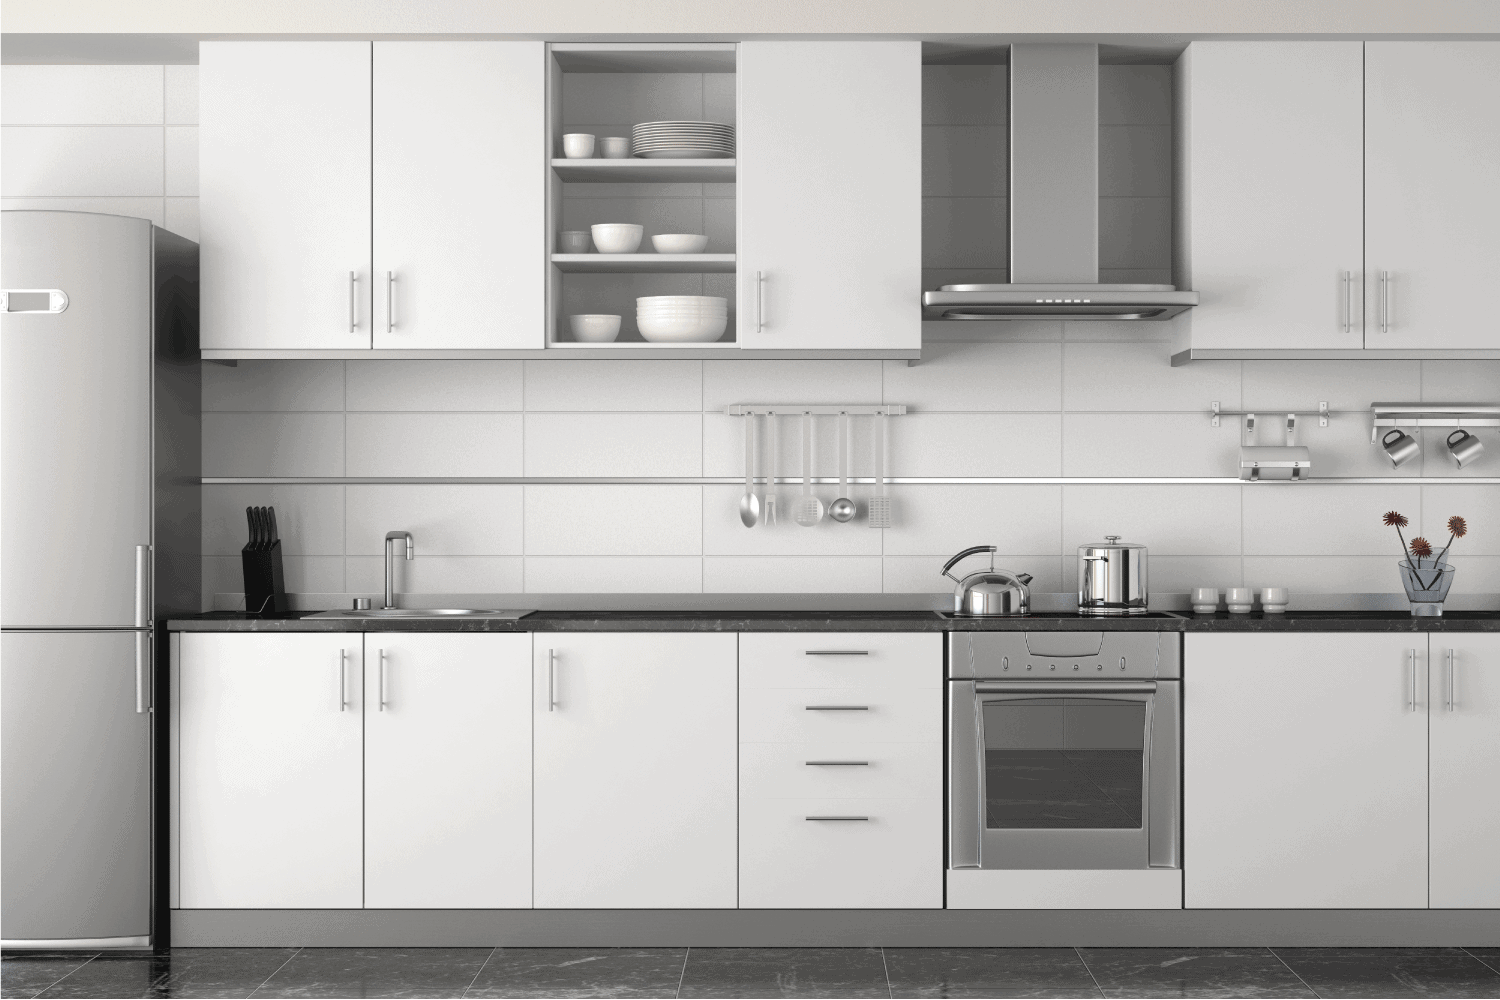 室内设计现代的白色与许多橱柜厨房bd手机下载